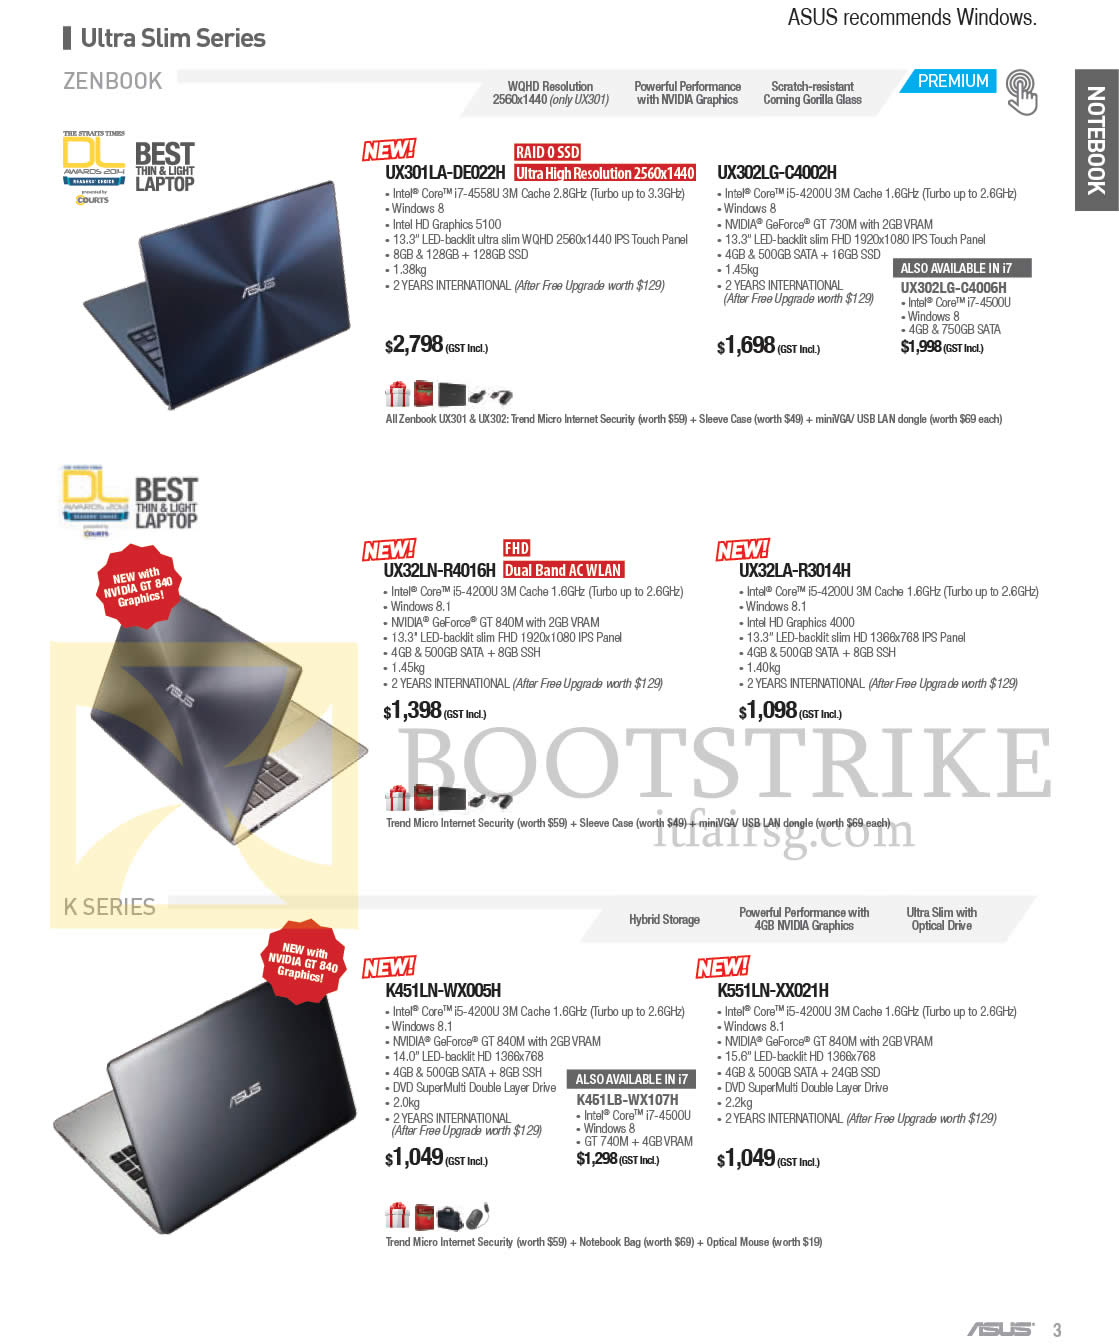 PC SHOW 2014 price list image brochure of ASUS Notebooks Zenbook, K Series UX301LA-DE002H, UX302LG-C4002H, UX32LA-R3014H, K451LN-WX005H WX107H XX021H